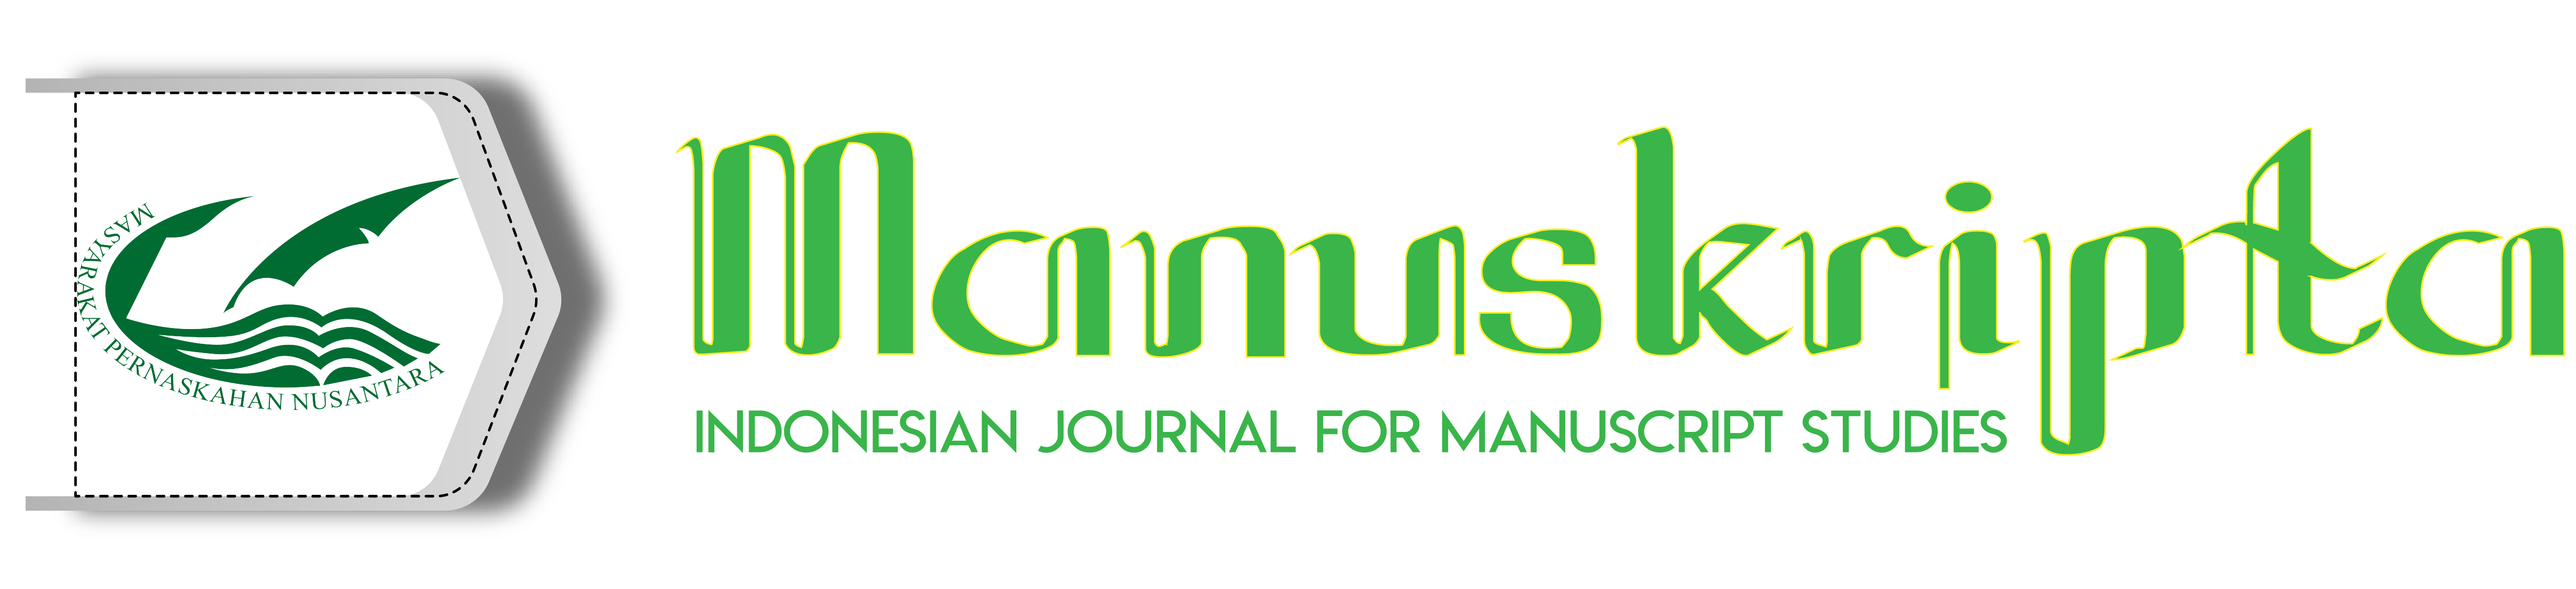 Indonesian Journal for Manuscript Studies